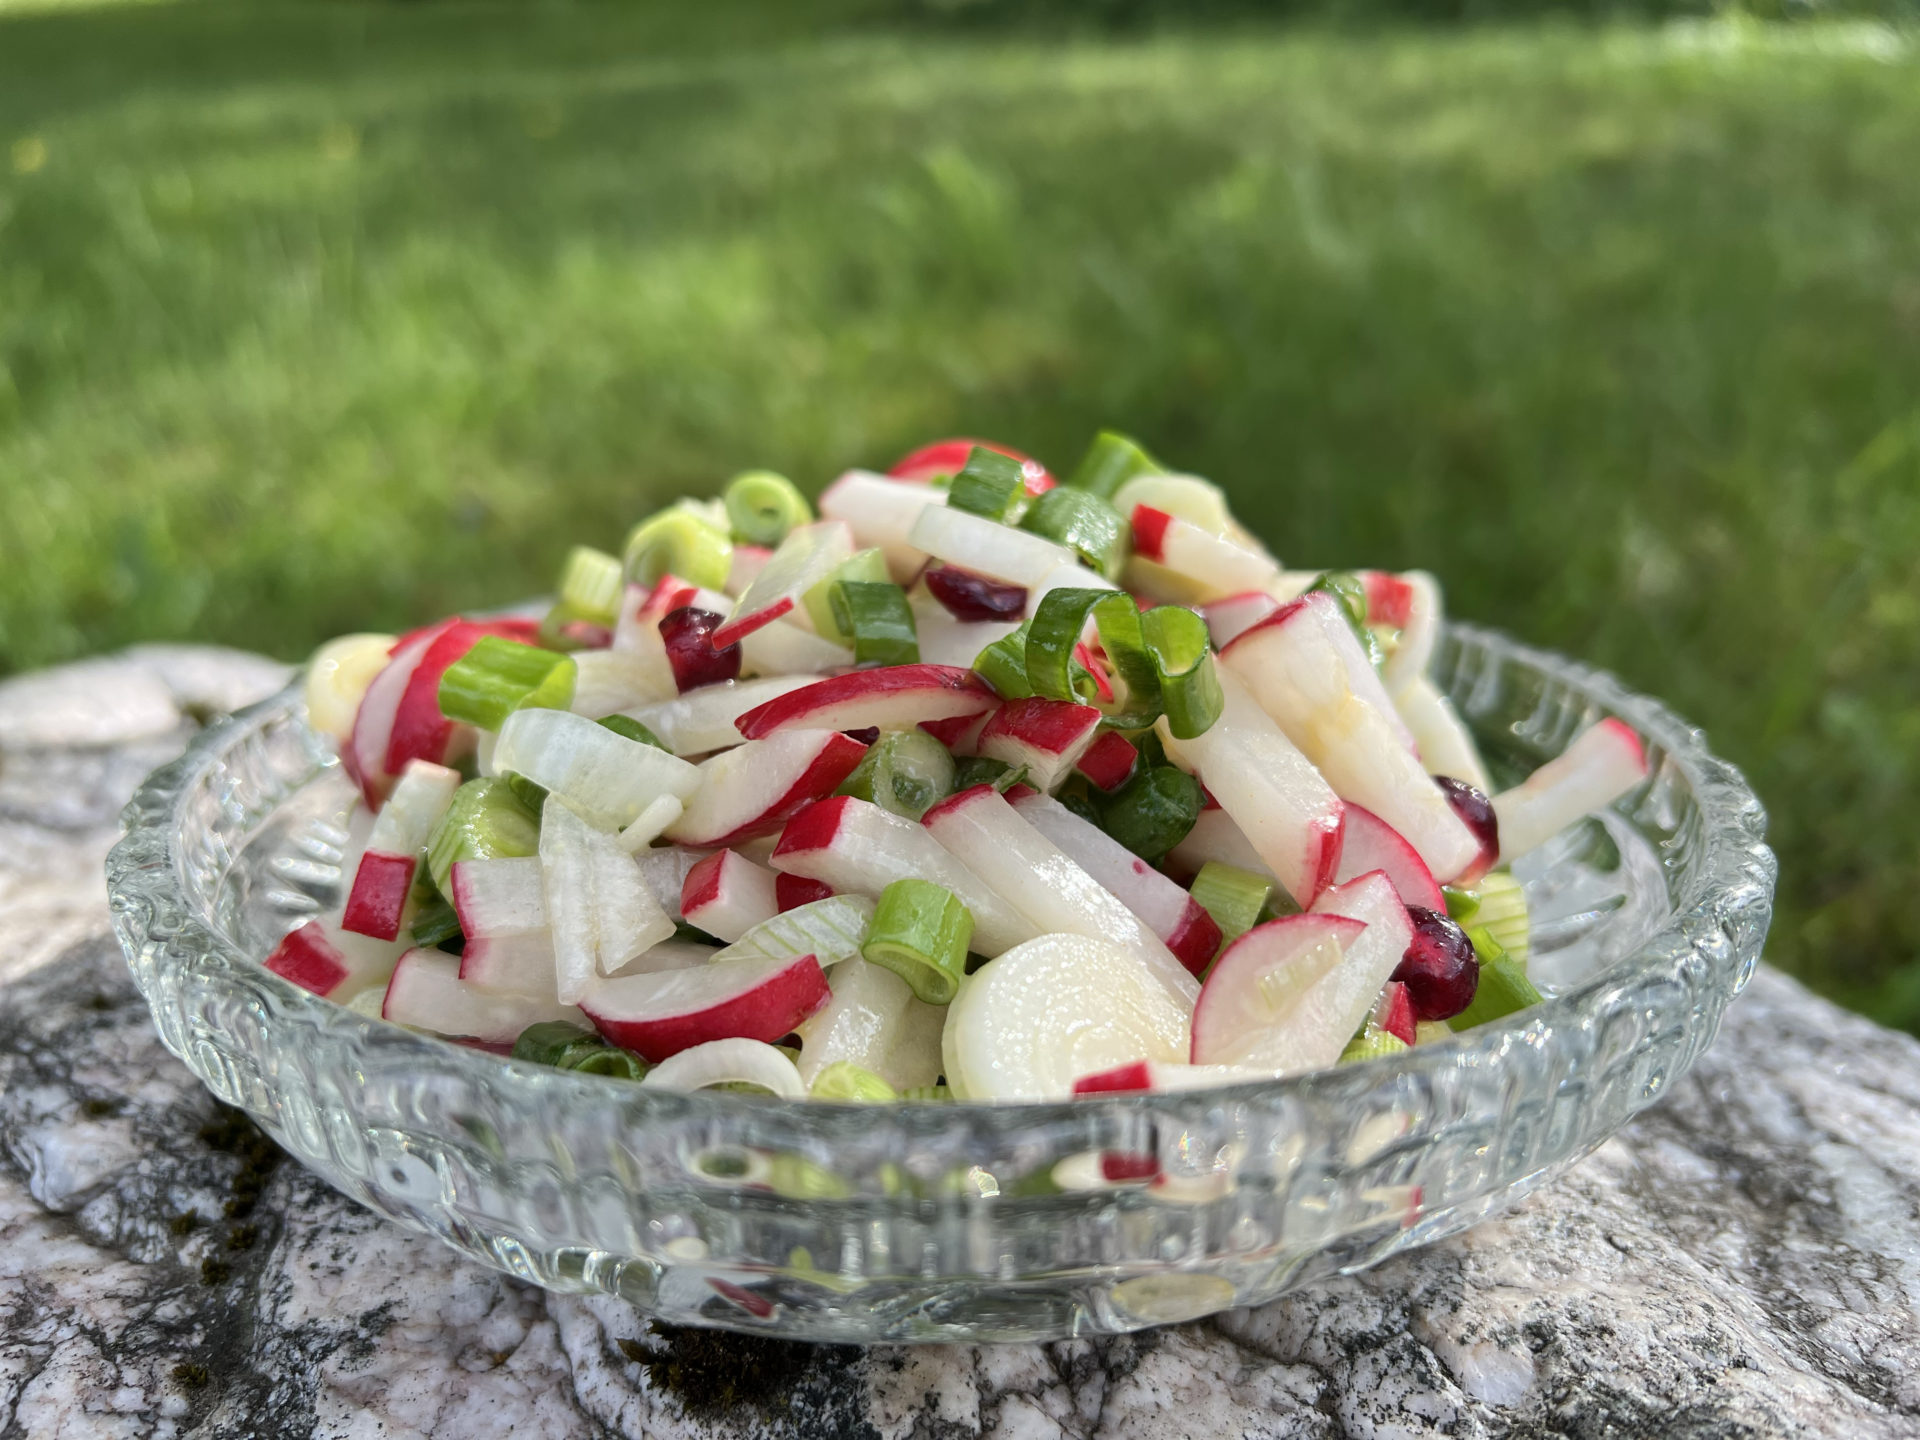 Radieschen-Salat mit Frühlingszwiebel und Granatapfel